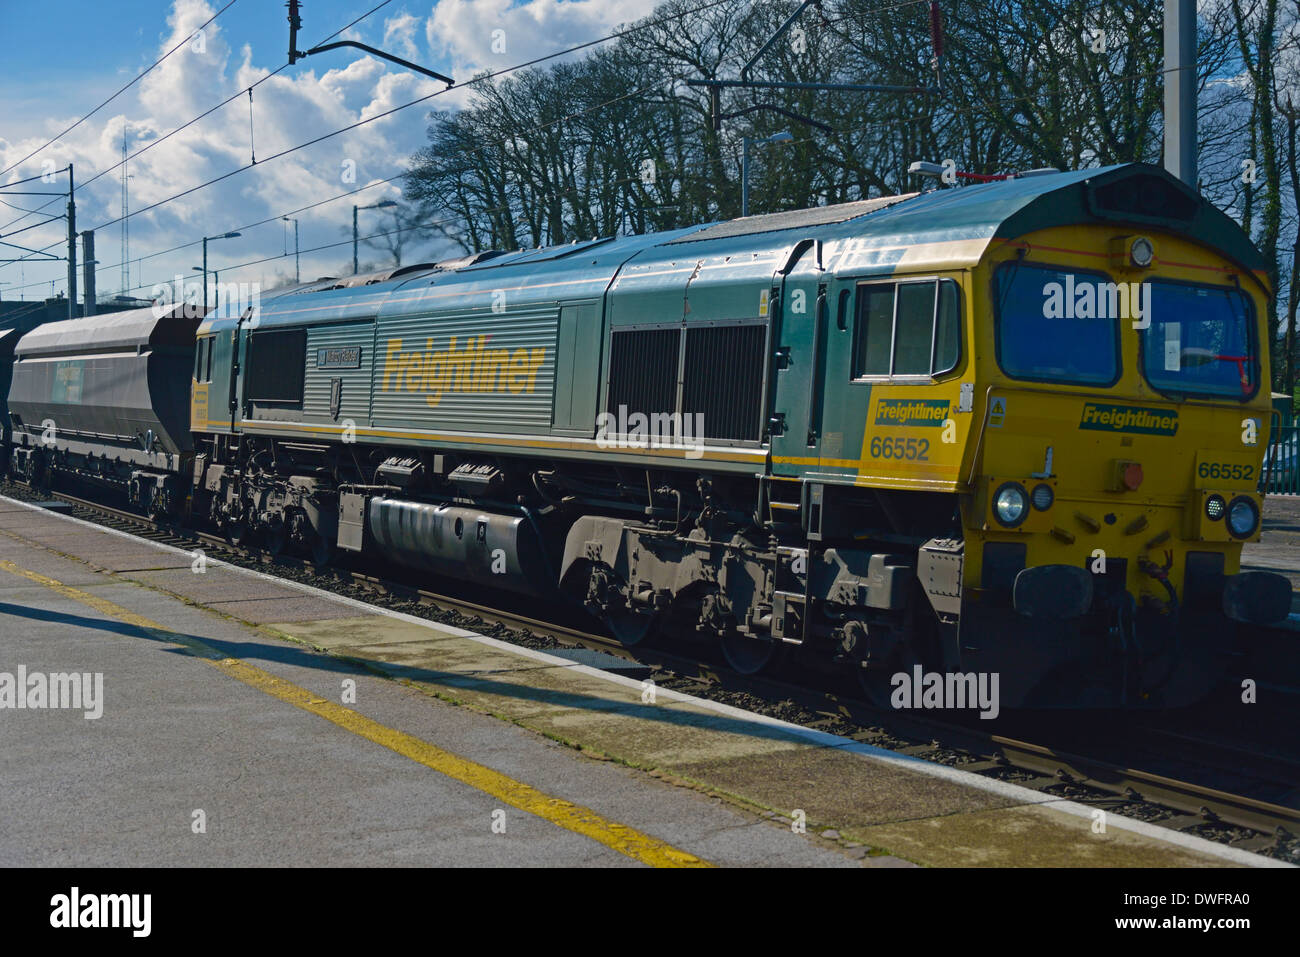 Freightliner Classe 66 locomotore con carichi pesanti camion a velocità. Stazione Oxenholme, Linea principale della costa occidentale, Cumbria, England, Regno Unito Foto Stock